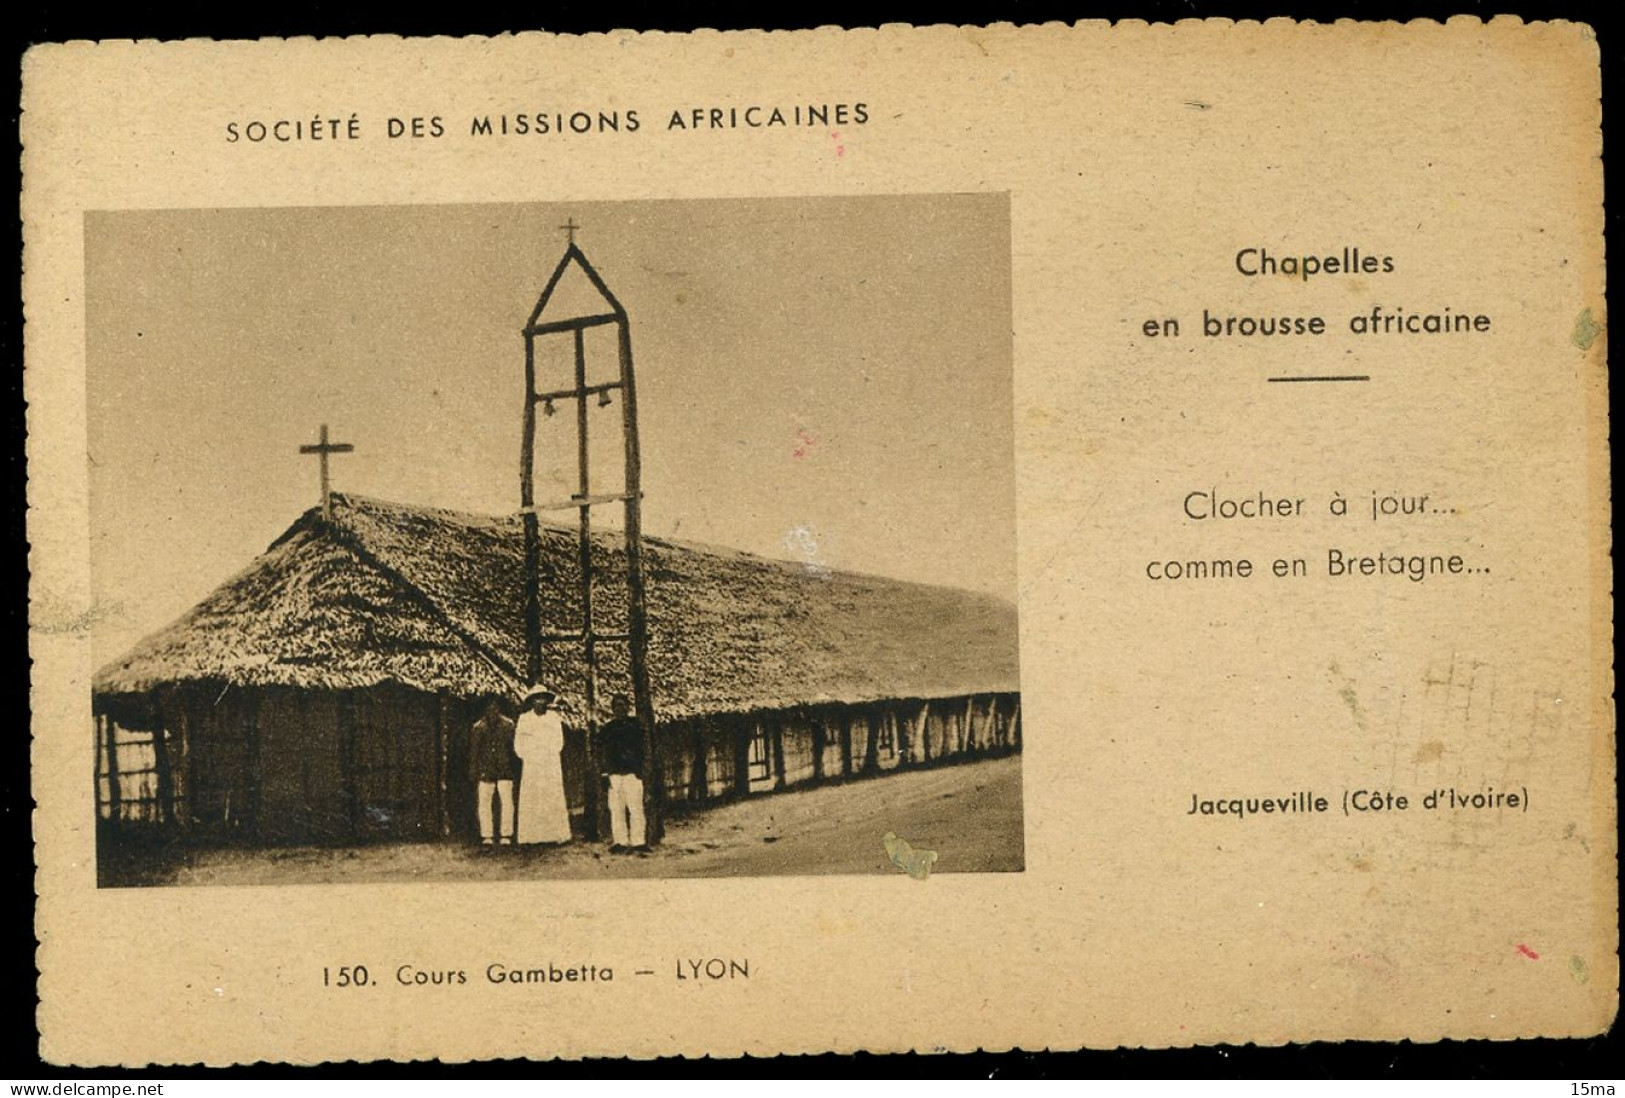 Cote D'Ivoire Jacqueville Société Des Missions Africaines Chapelles En Brousse Africaine - Côte-d'Ivoire